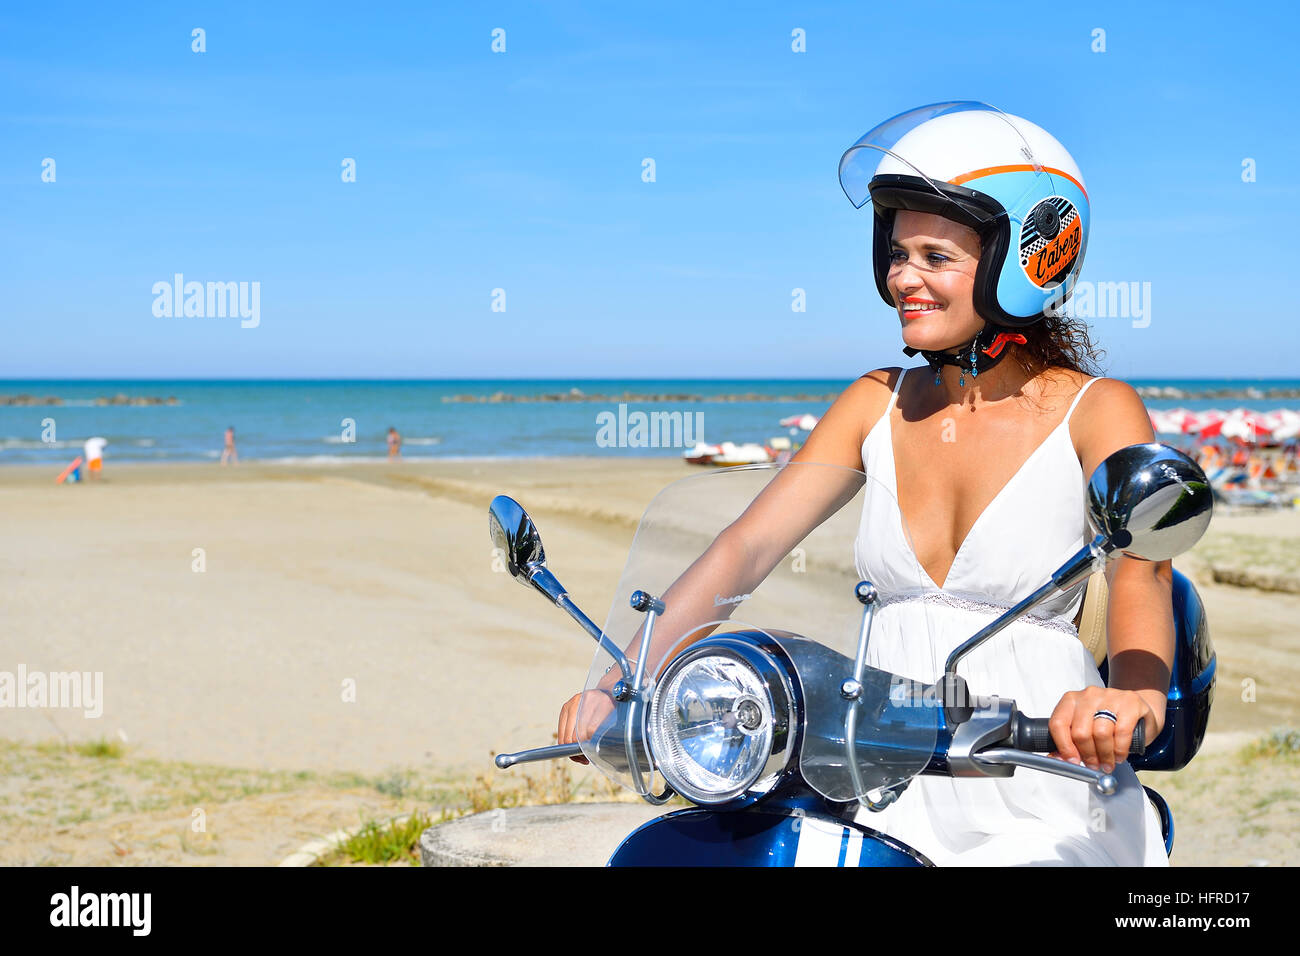 Donna su scooter Vespa, spiaggia, Senigallia, provincia di Ancona, Marche, Italia Foto Stock